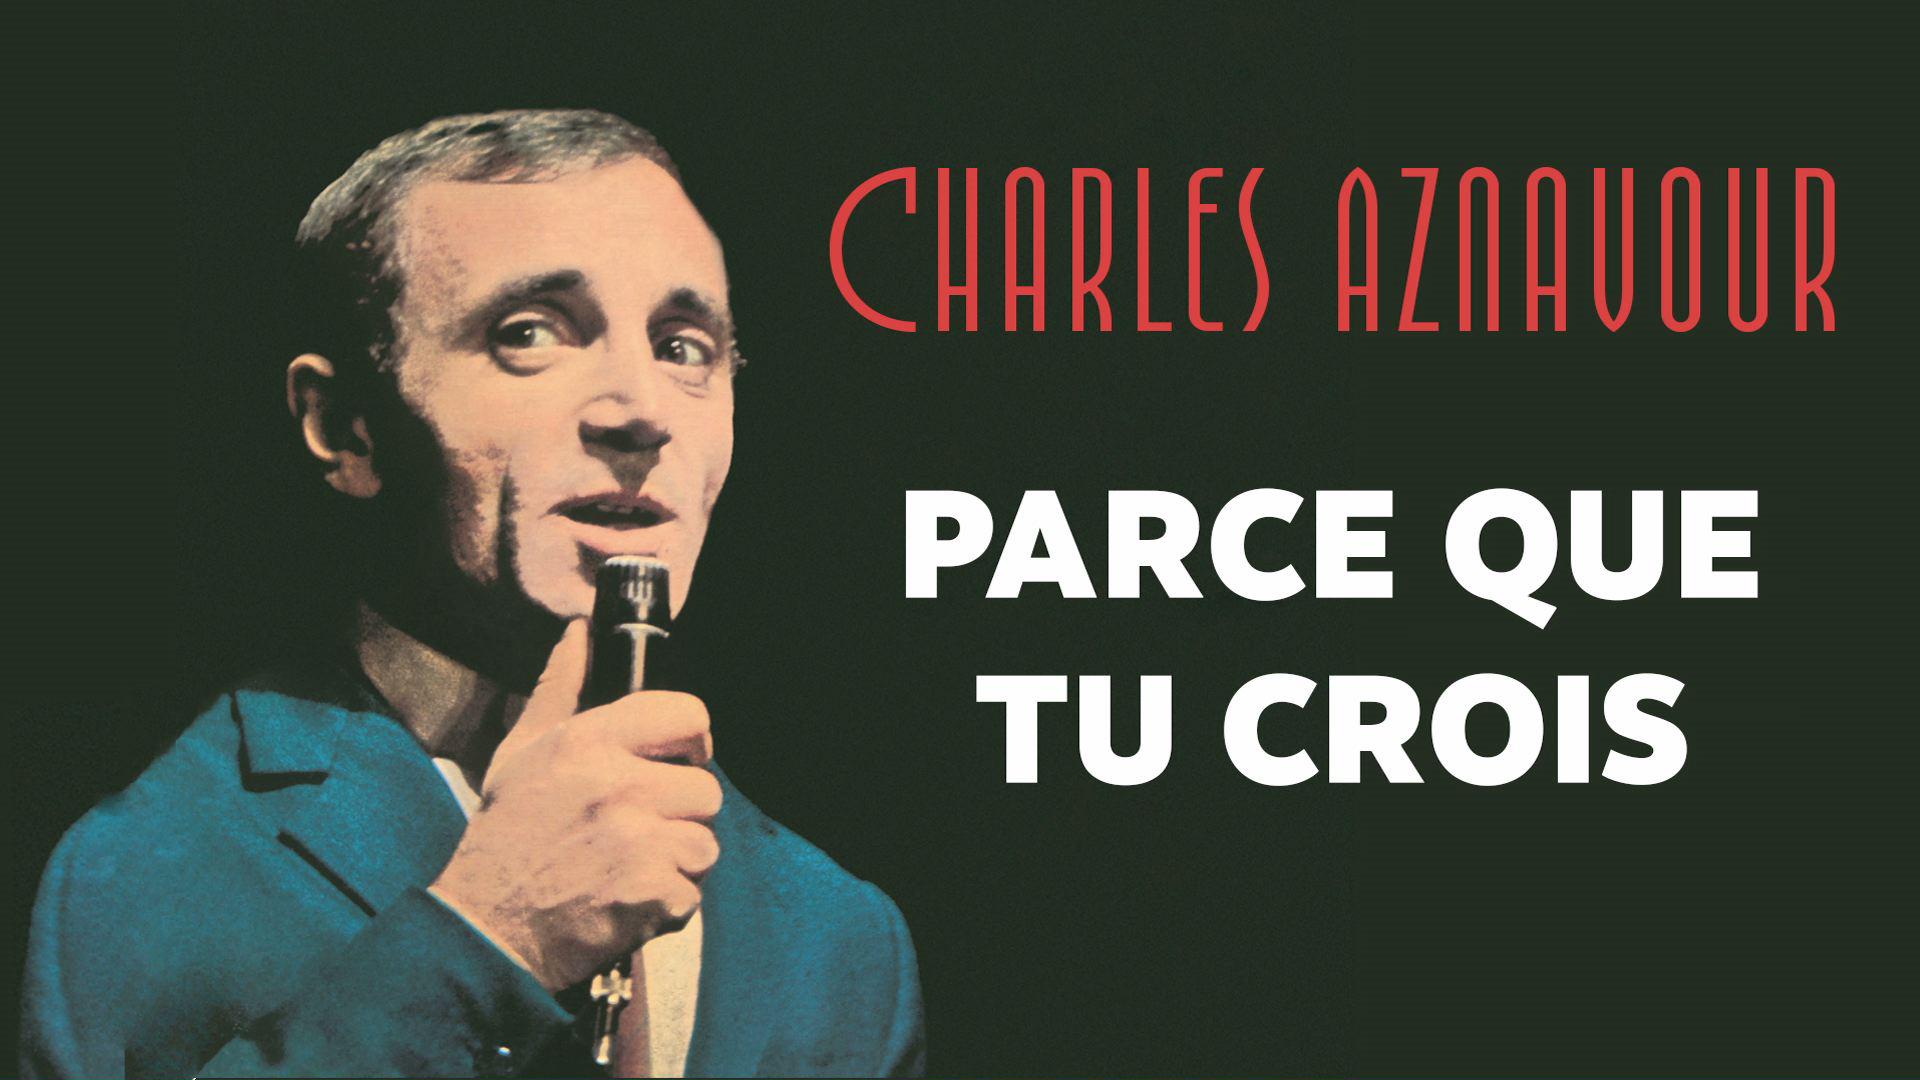 Charles Aznavour - Parce que tu crois (Audio Officiel)